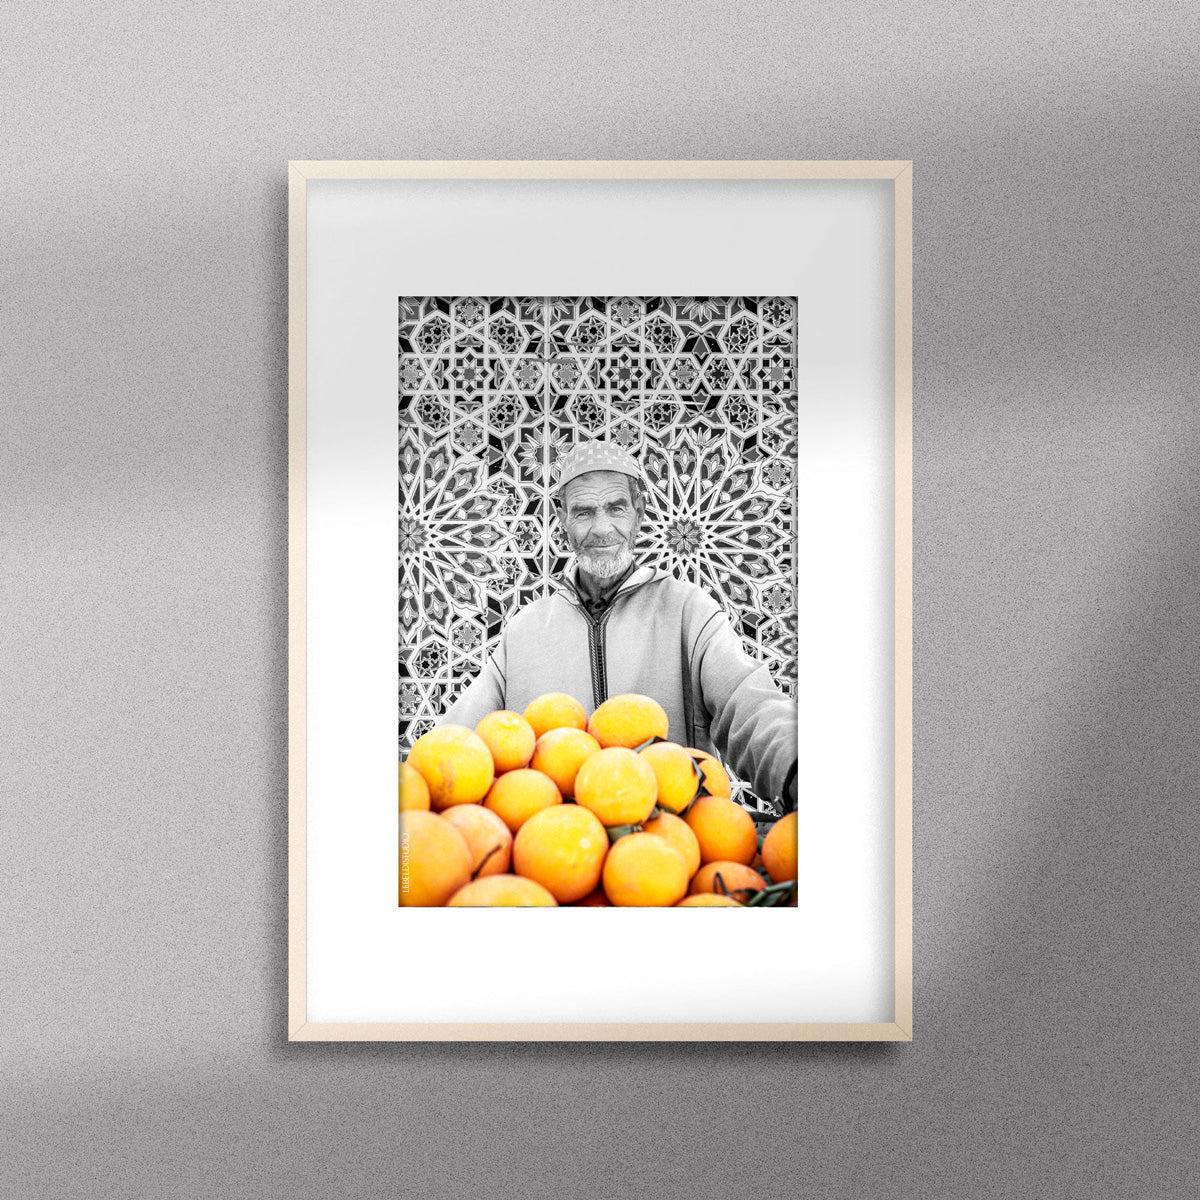 Tableau décoratif en noir et blanc d'un vieux marchand d'oranges très souriant, encadré dans un cadre en bois - Format A3.